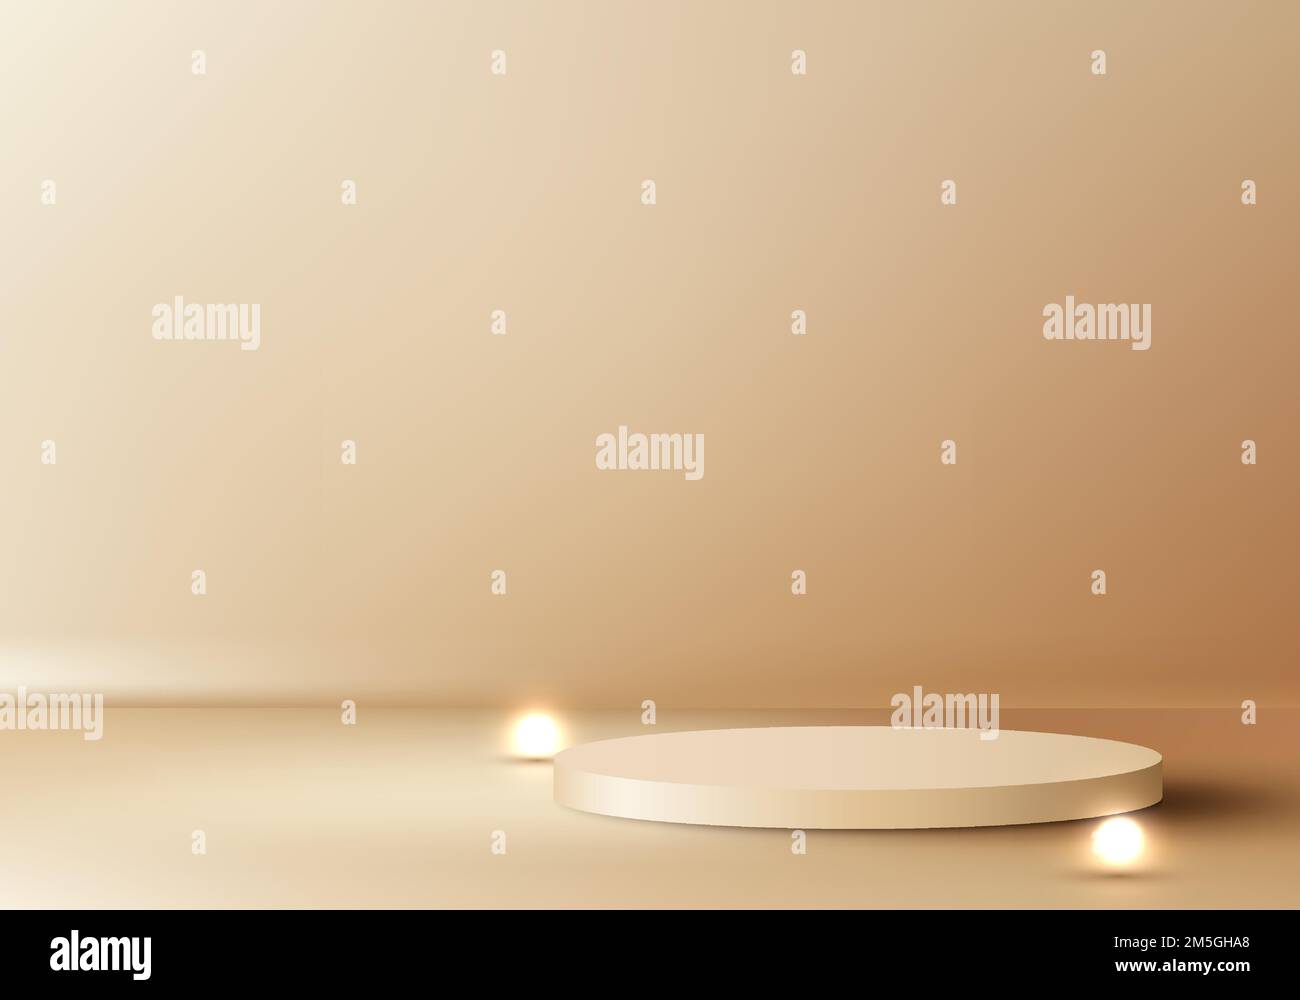 3D realistisch elegante goldzylindrische Dekoration Podium Leuchtkugel auf goldenem Hintergrund Luxus minimalistischer Stil. Produktpräsentation für Kosmetik, Ausstellungsraum, Stock Vektor